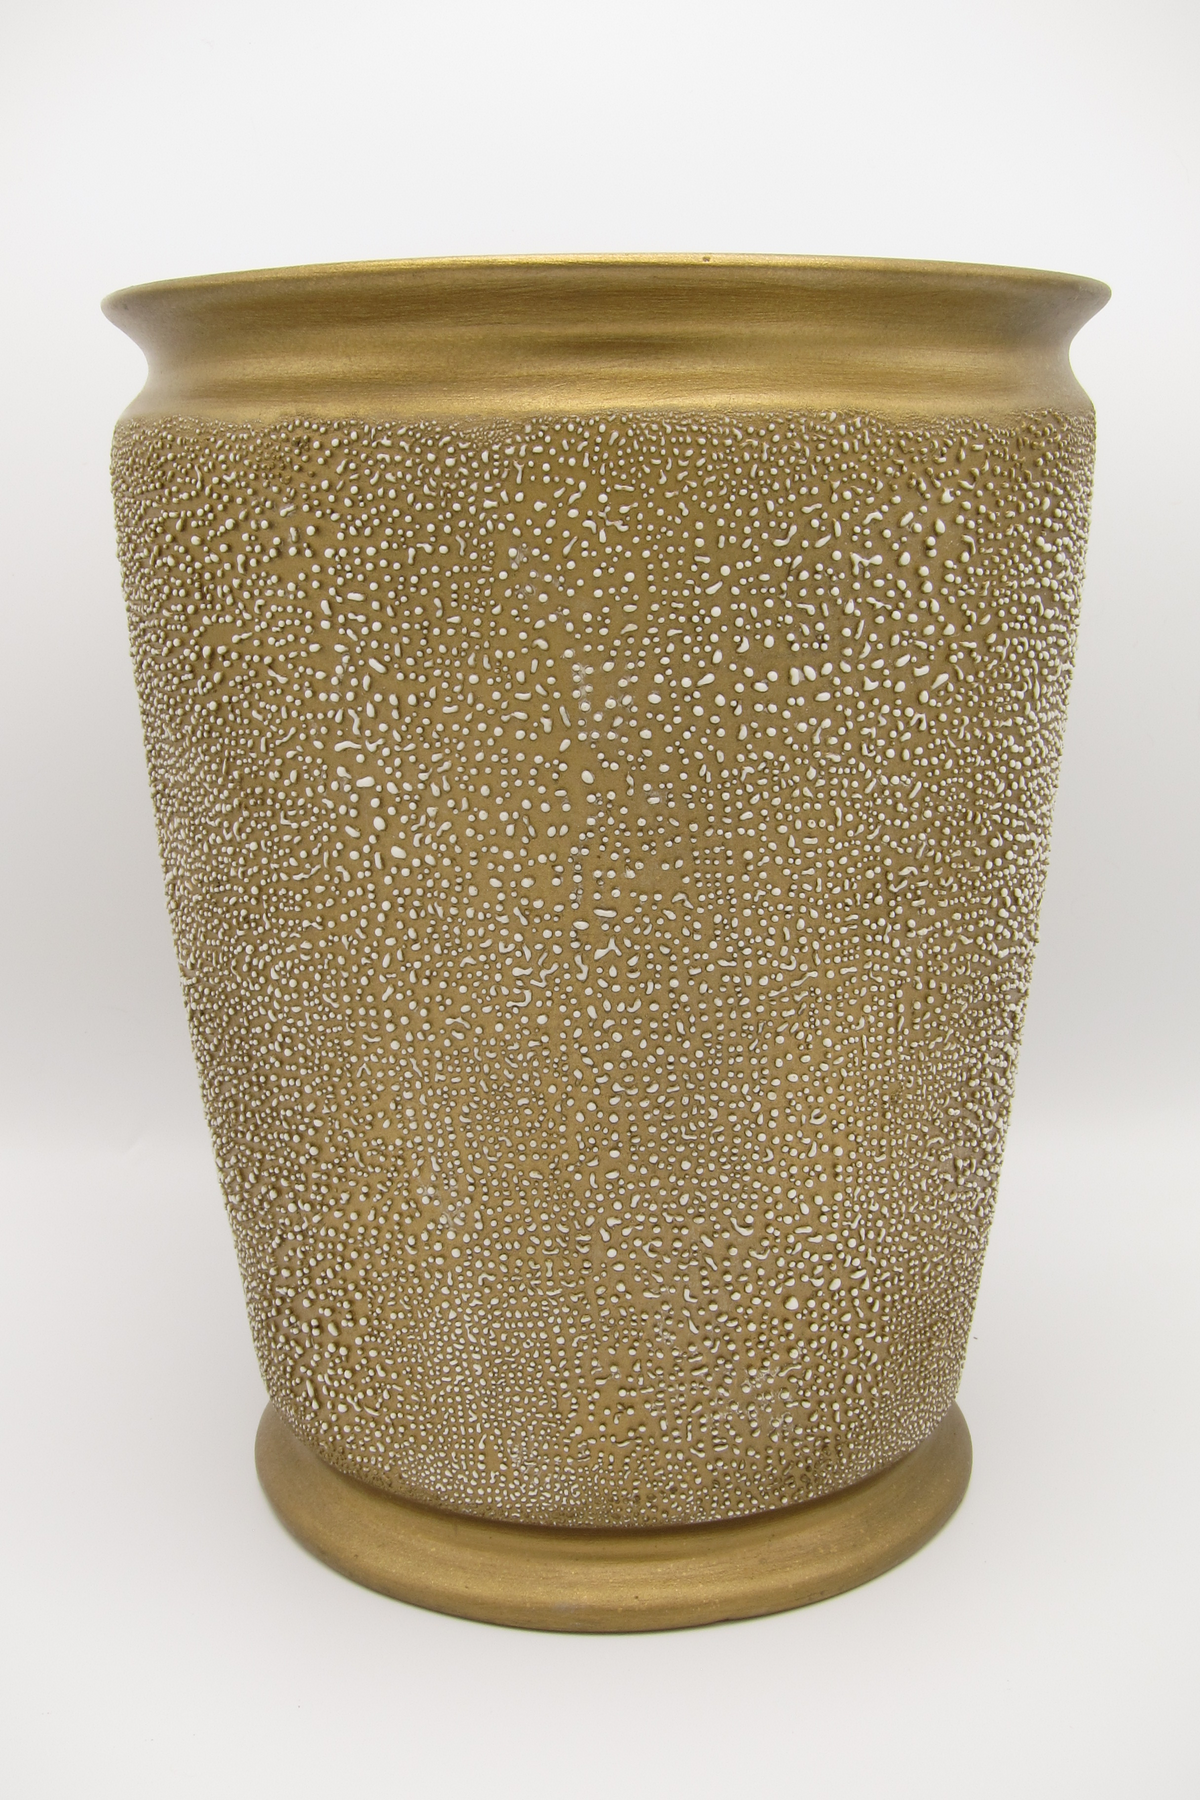 vintage gold ceramic waste basket